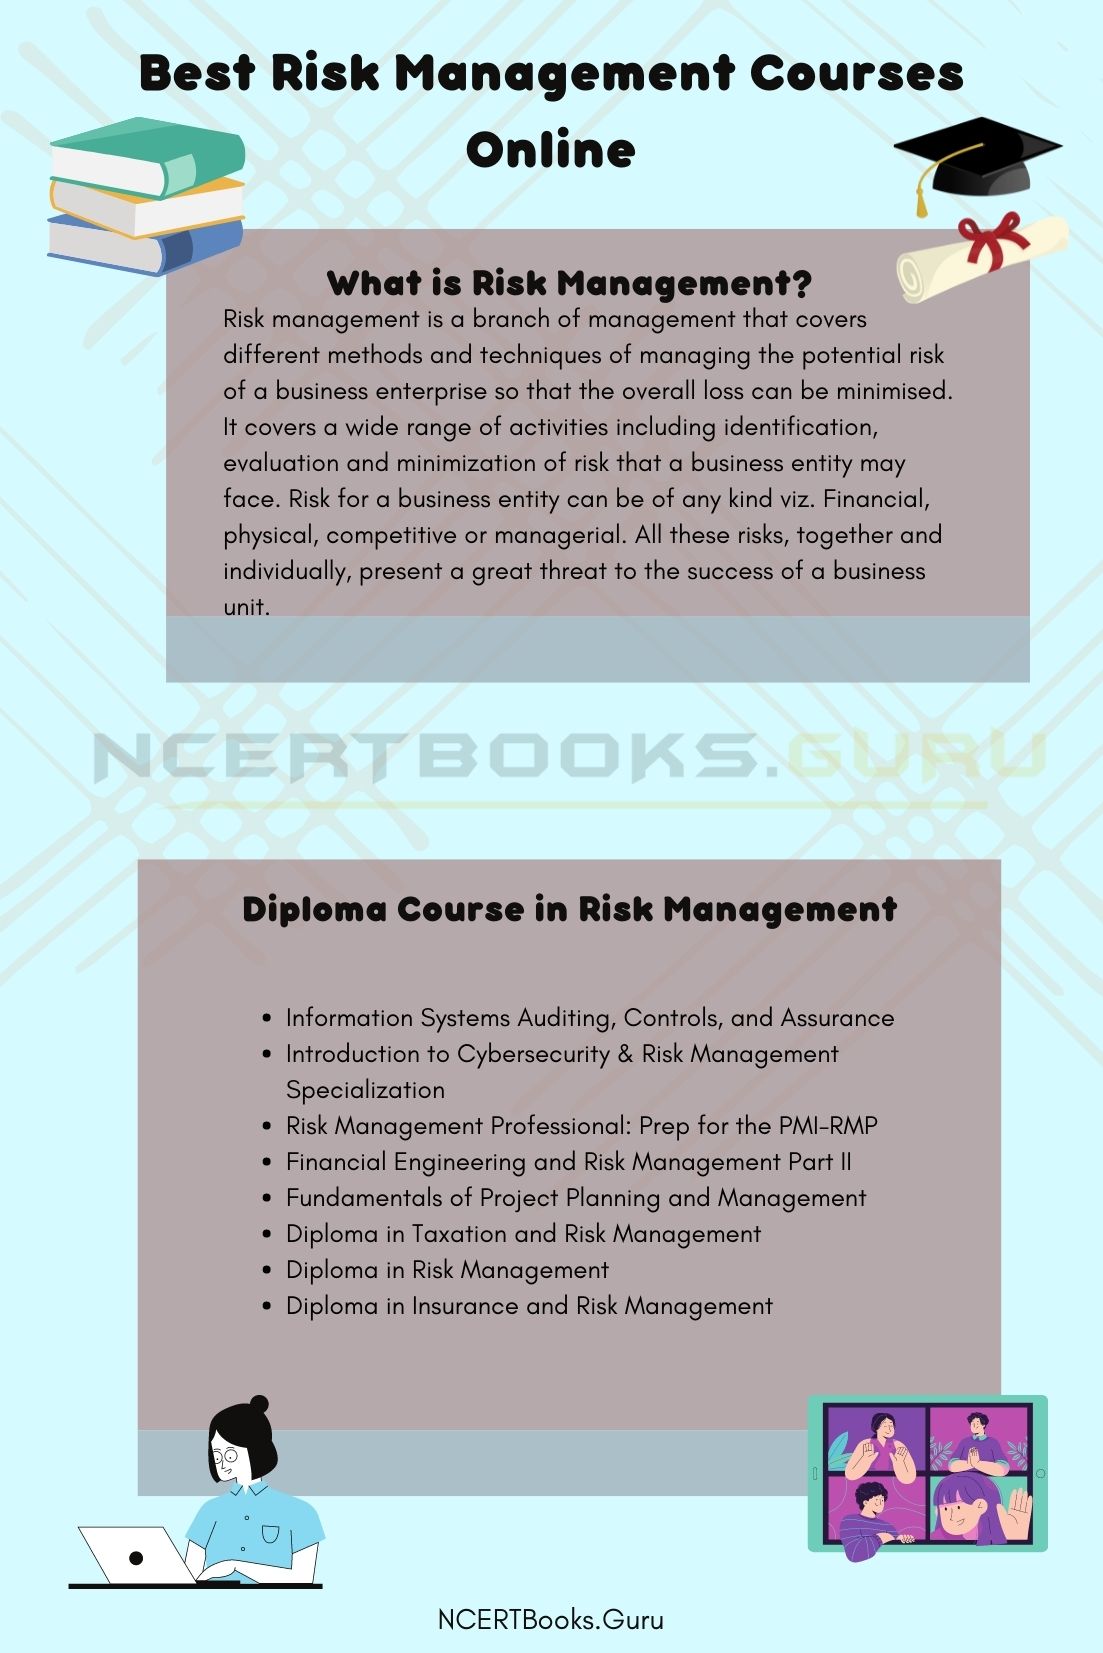 Risk Management Courses 2